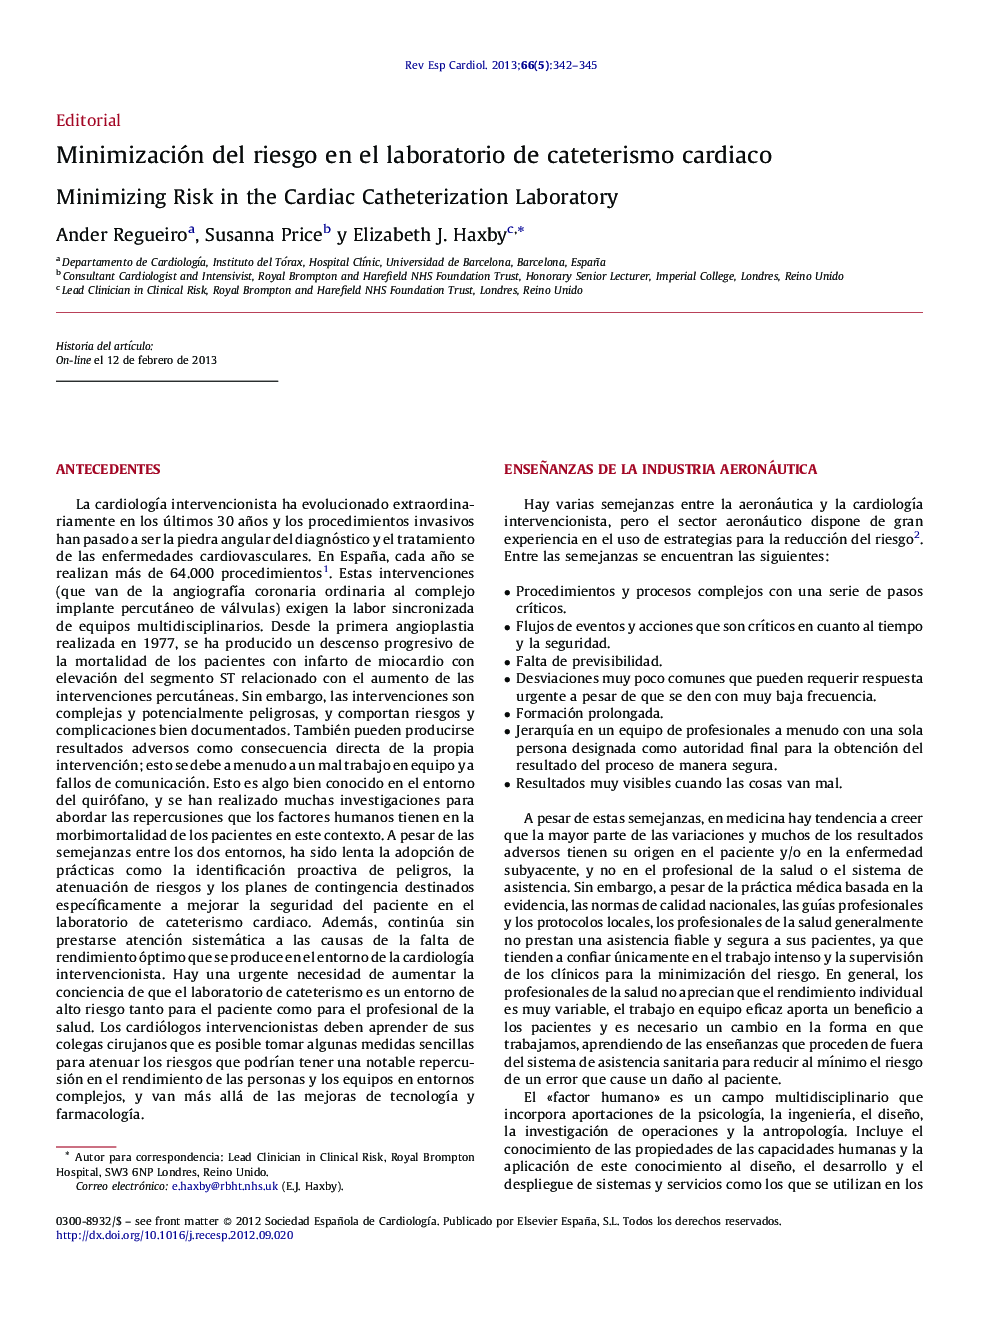 Minimización del riesgo en el laboratorio de cateterismo cardiaco